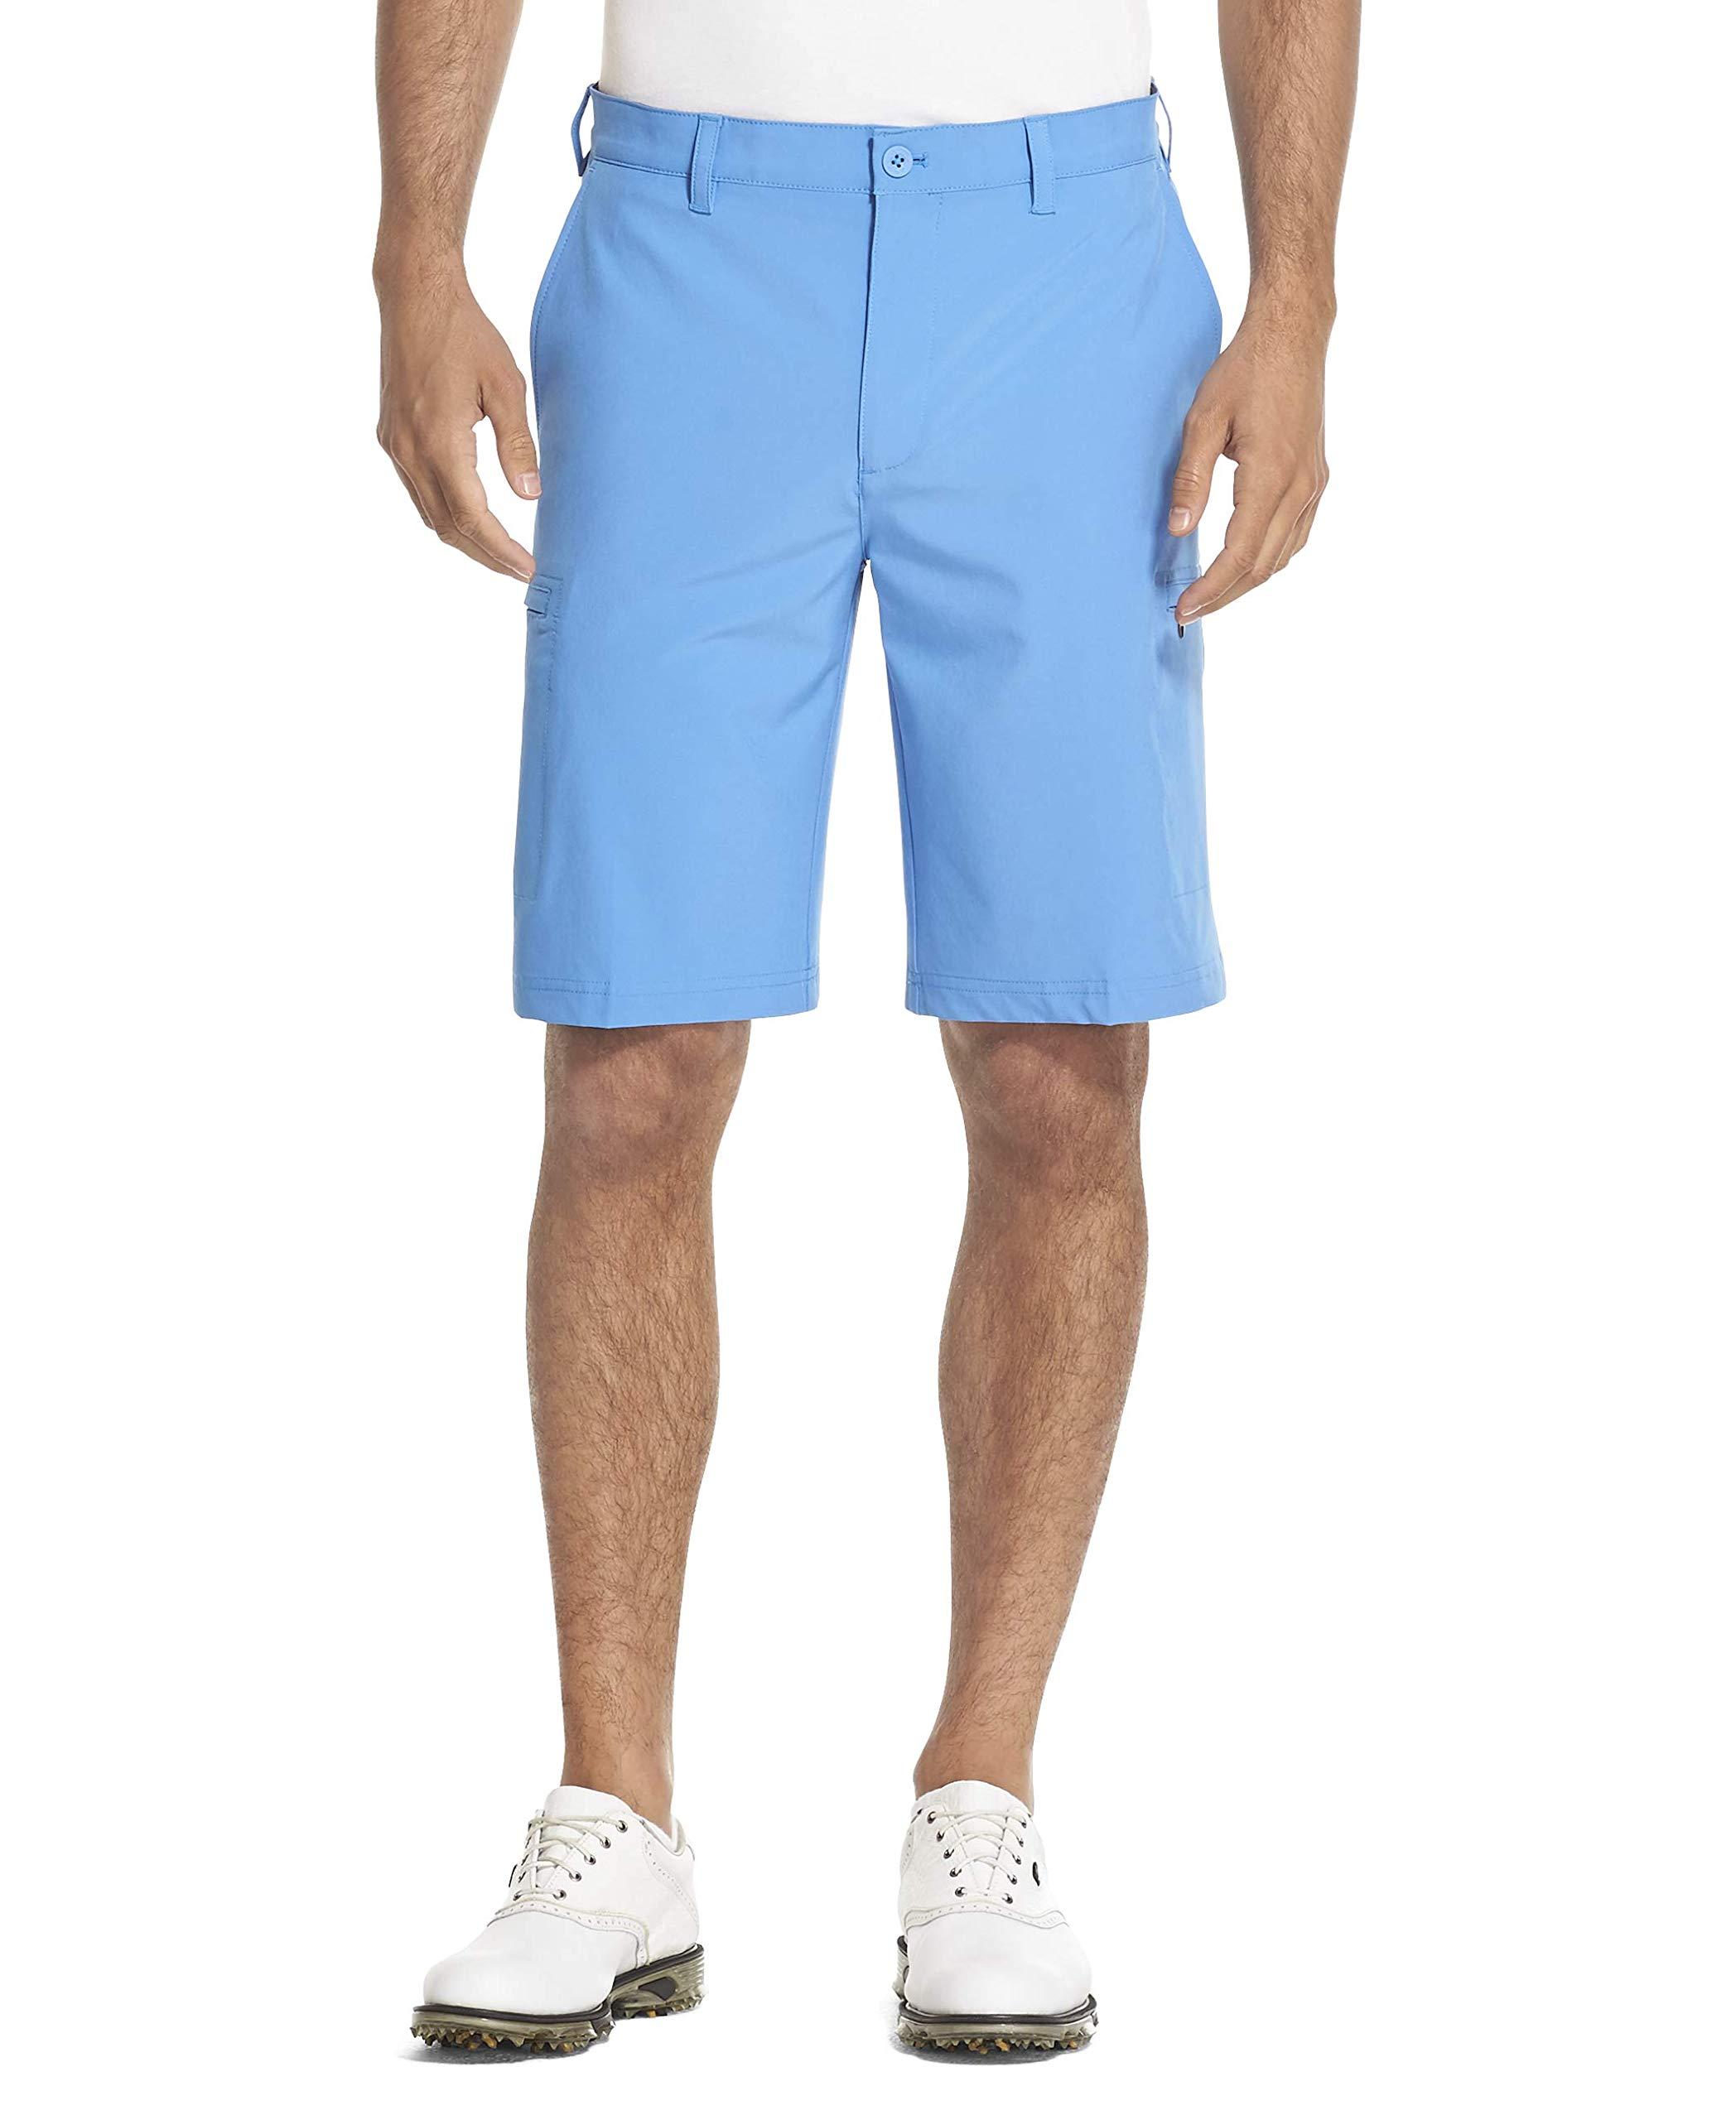 Buy > izod golf swingflex shorts > in stock